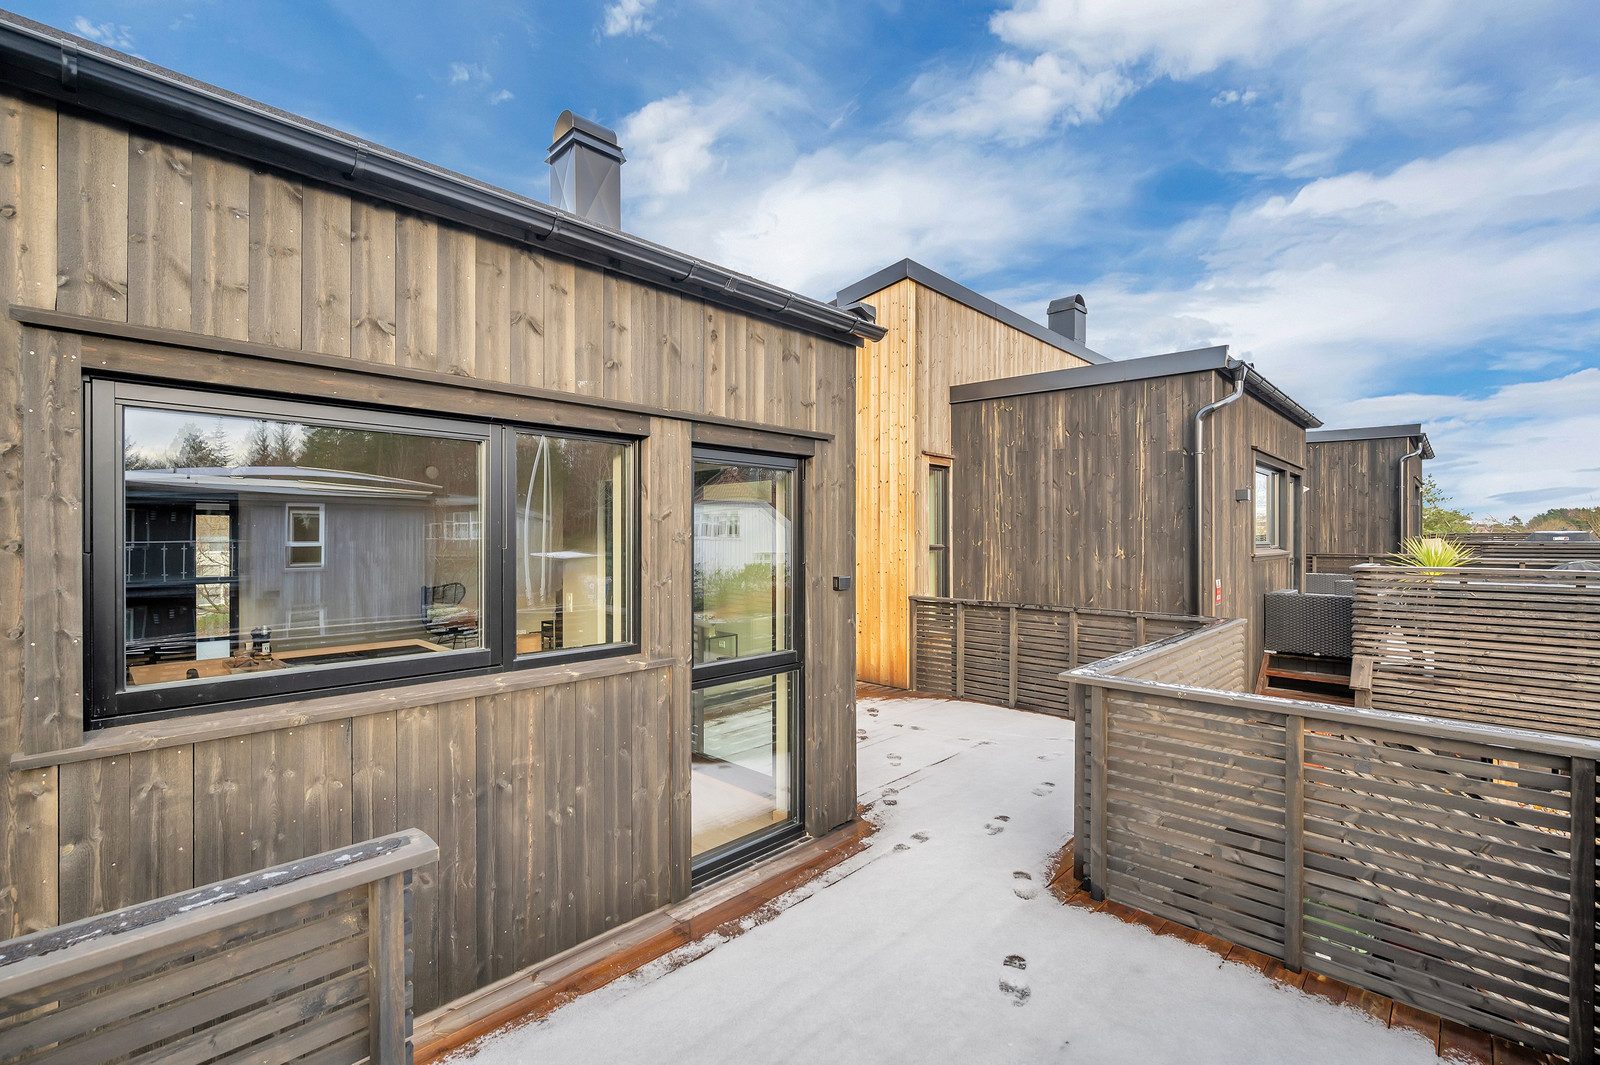 Image #37 2,99% FASTRENTE* Vågsbygd ved Andøya - Oppgradert funkisbolig i kjede med 2 stuer, 2 bad, 4 soverom, terrasse og carport